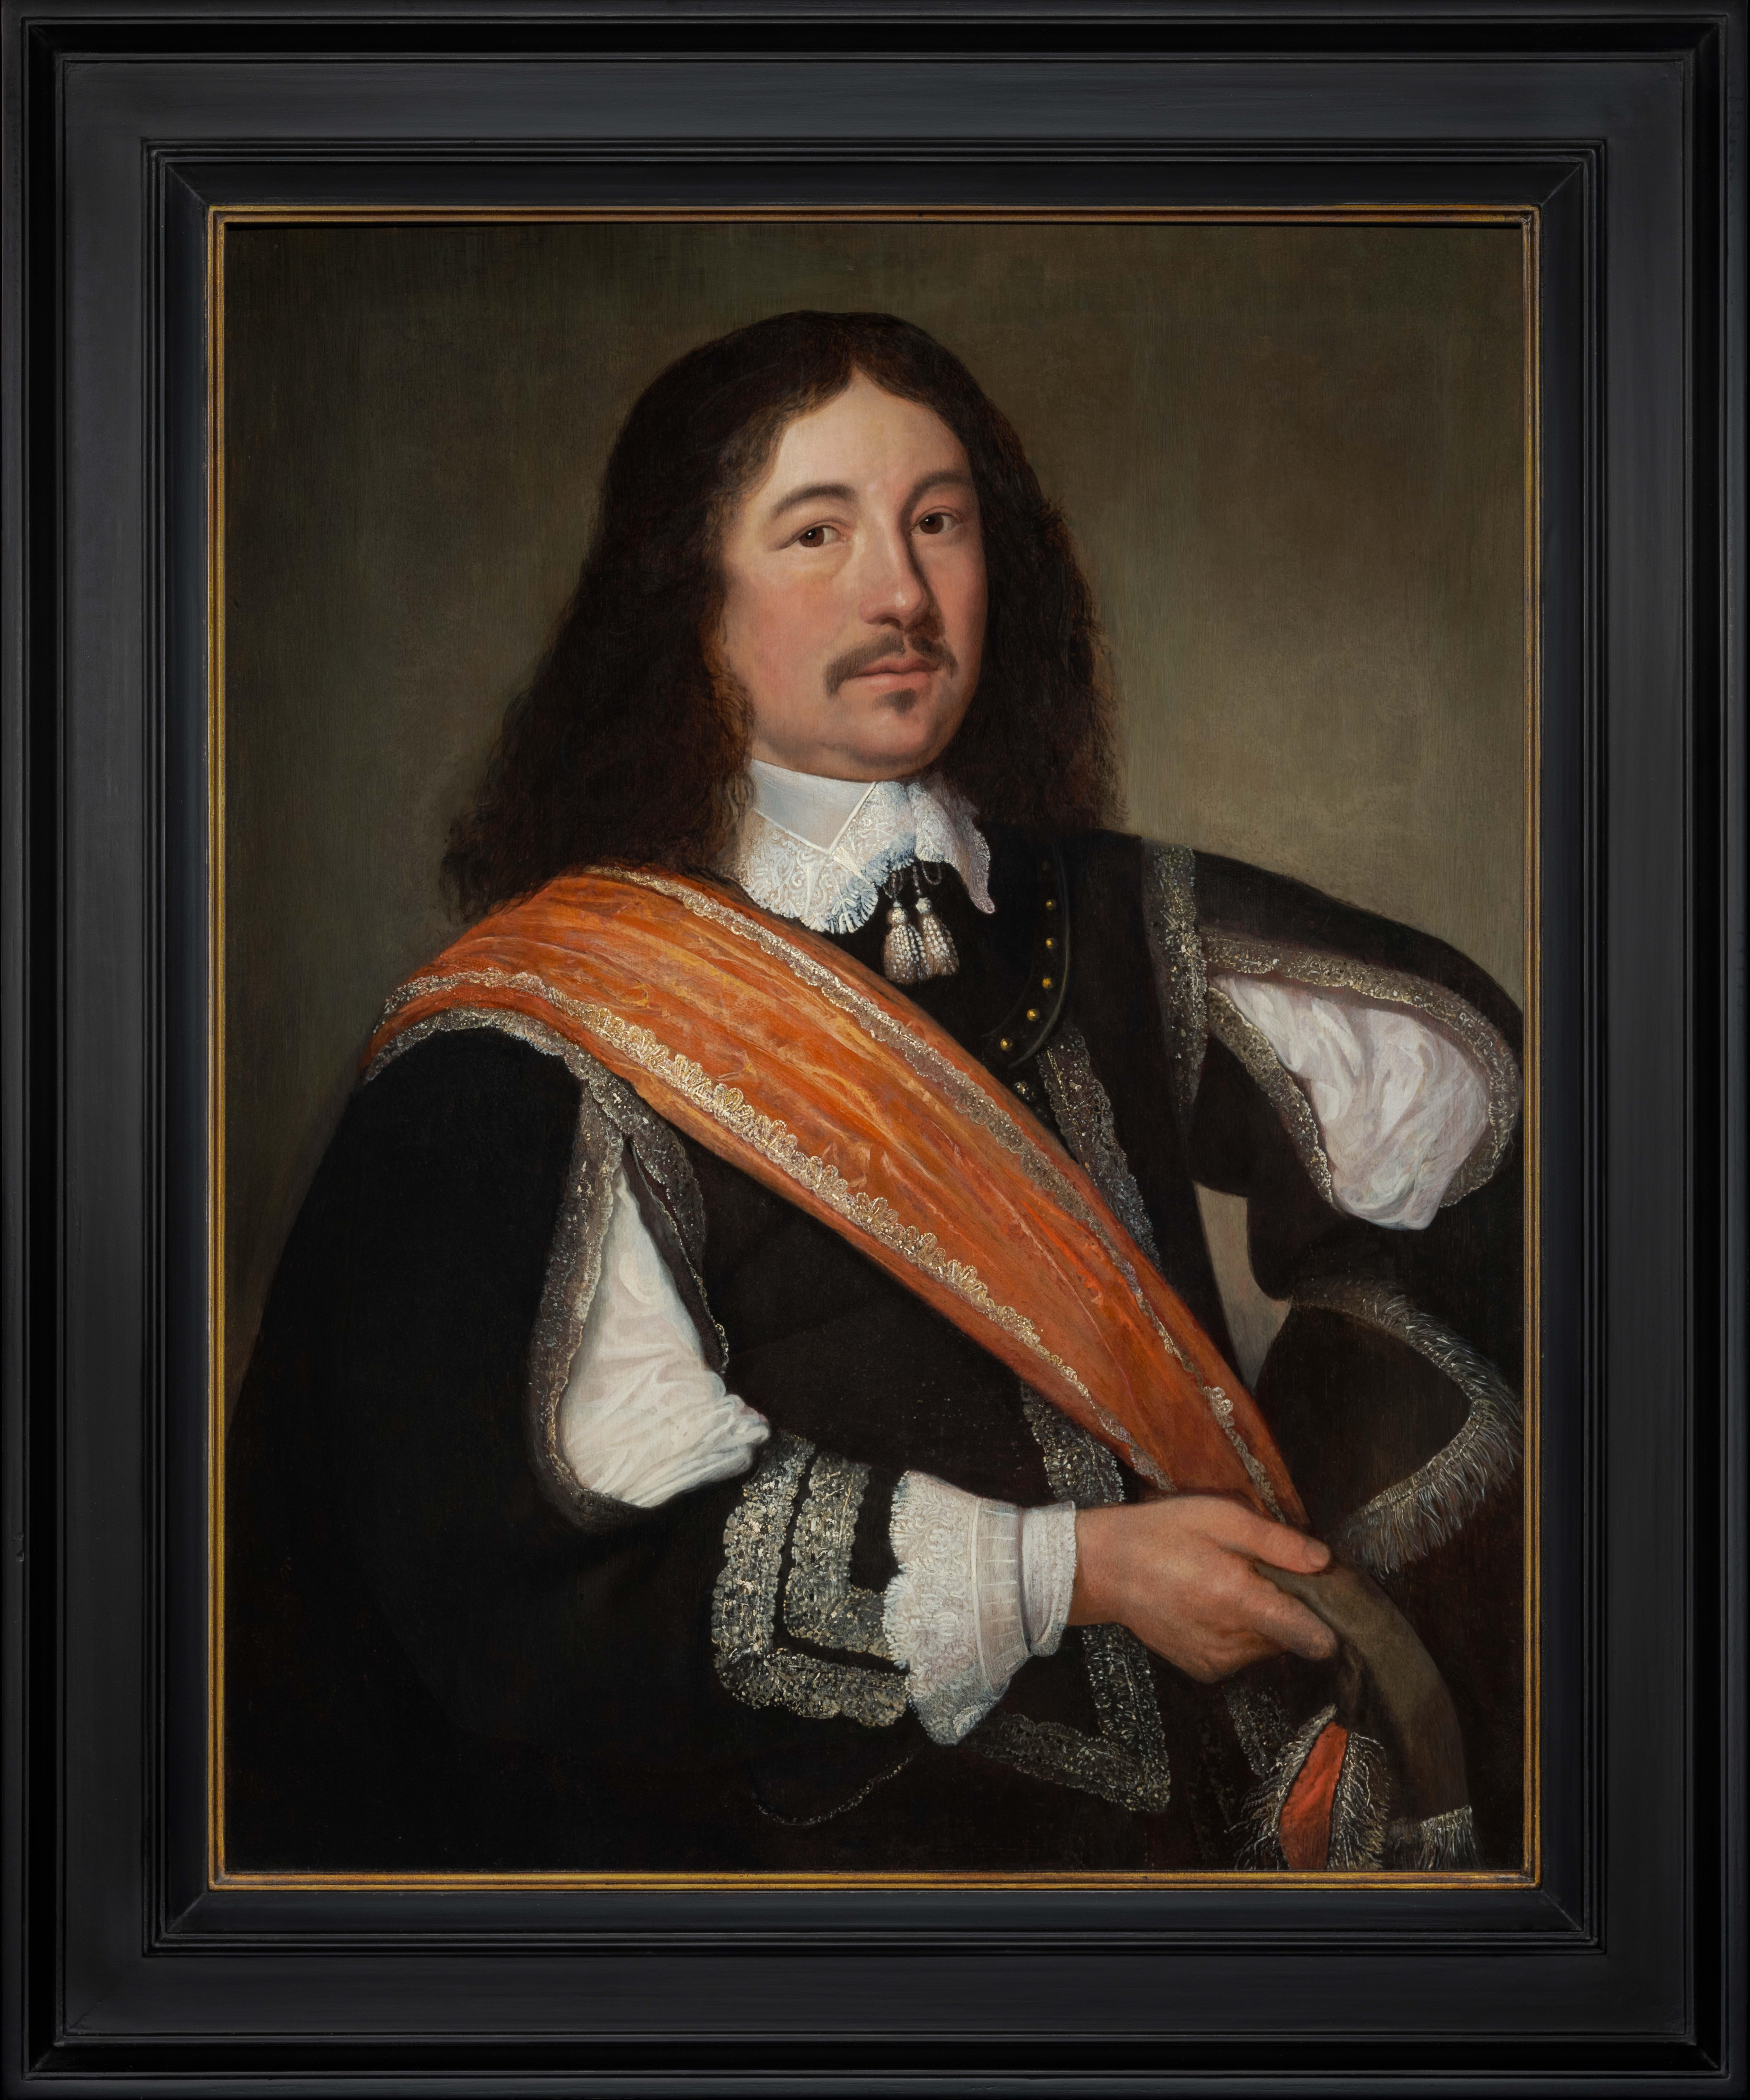 Portrait Gentleman Black Coat Orange Sash, Old Master hollandais, huile sur panneau vers 1650